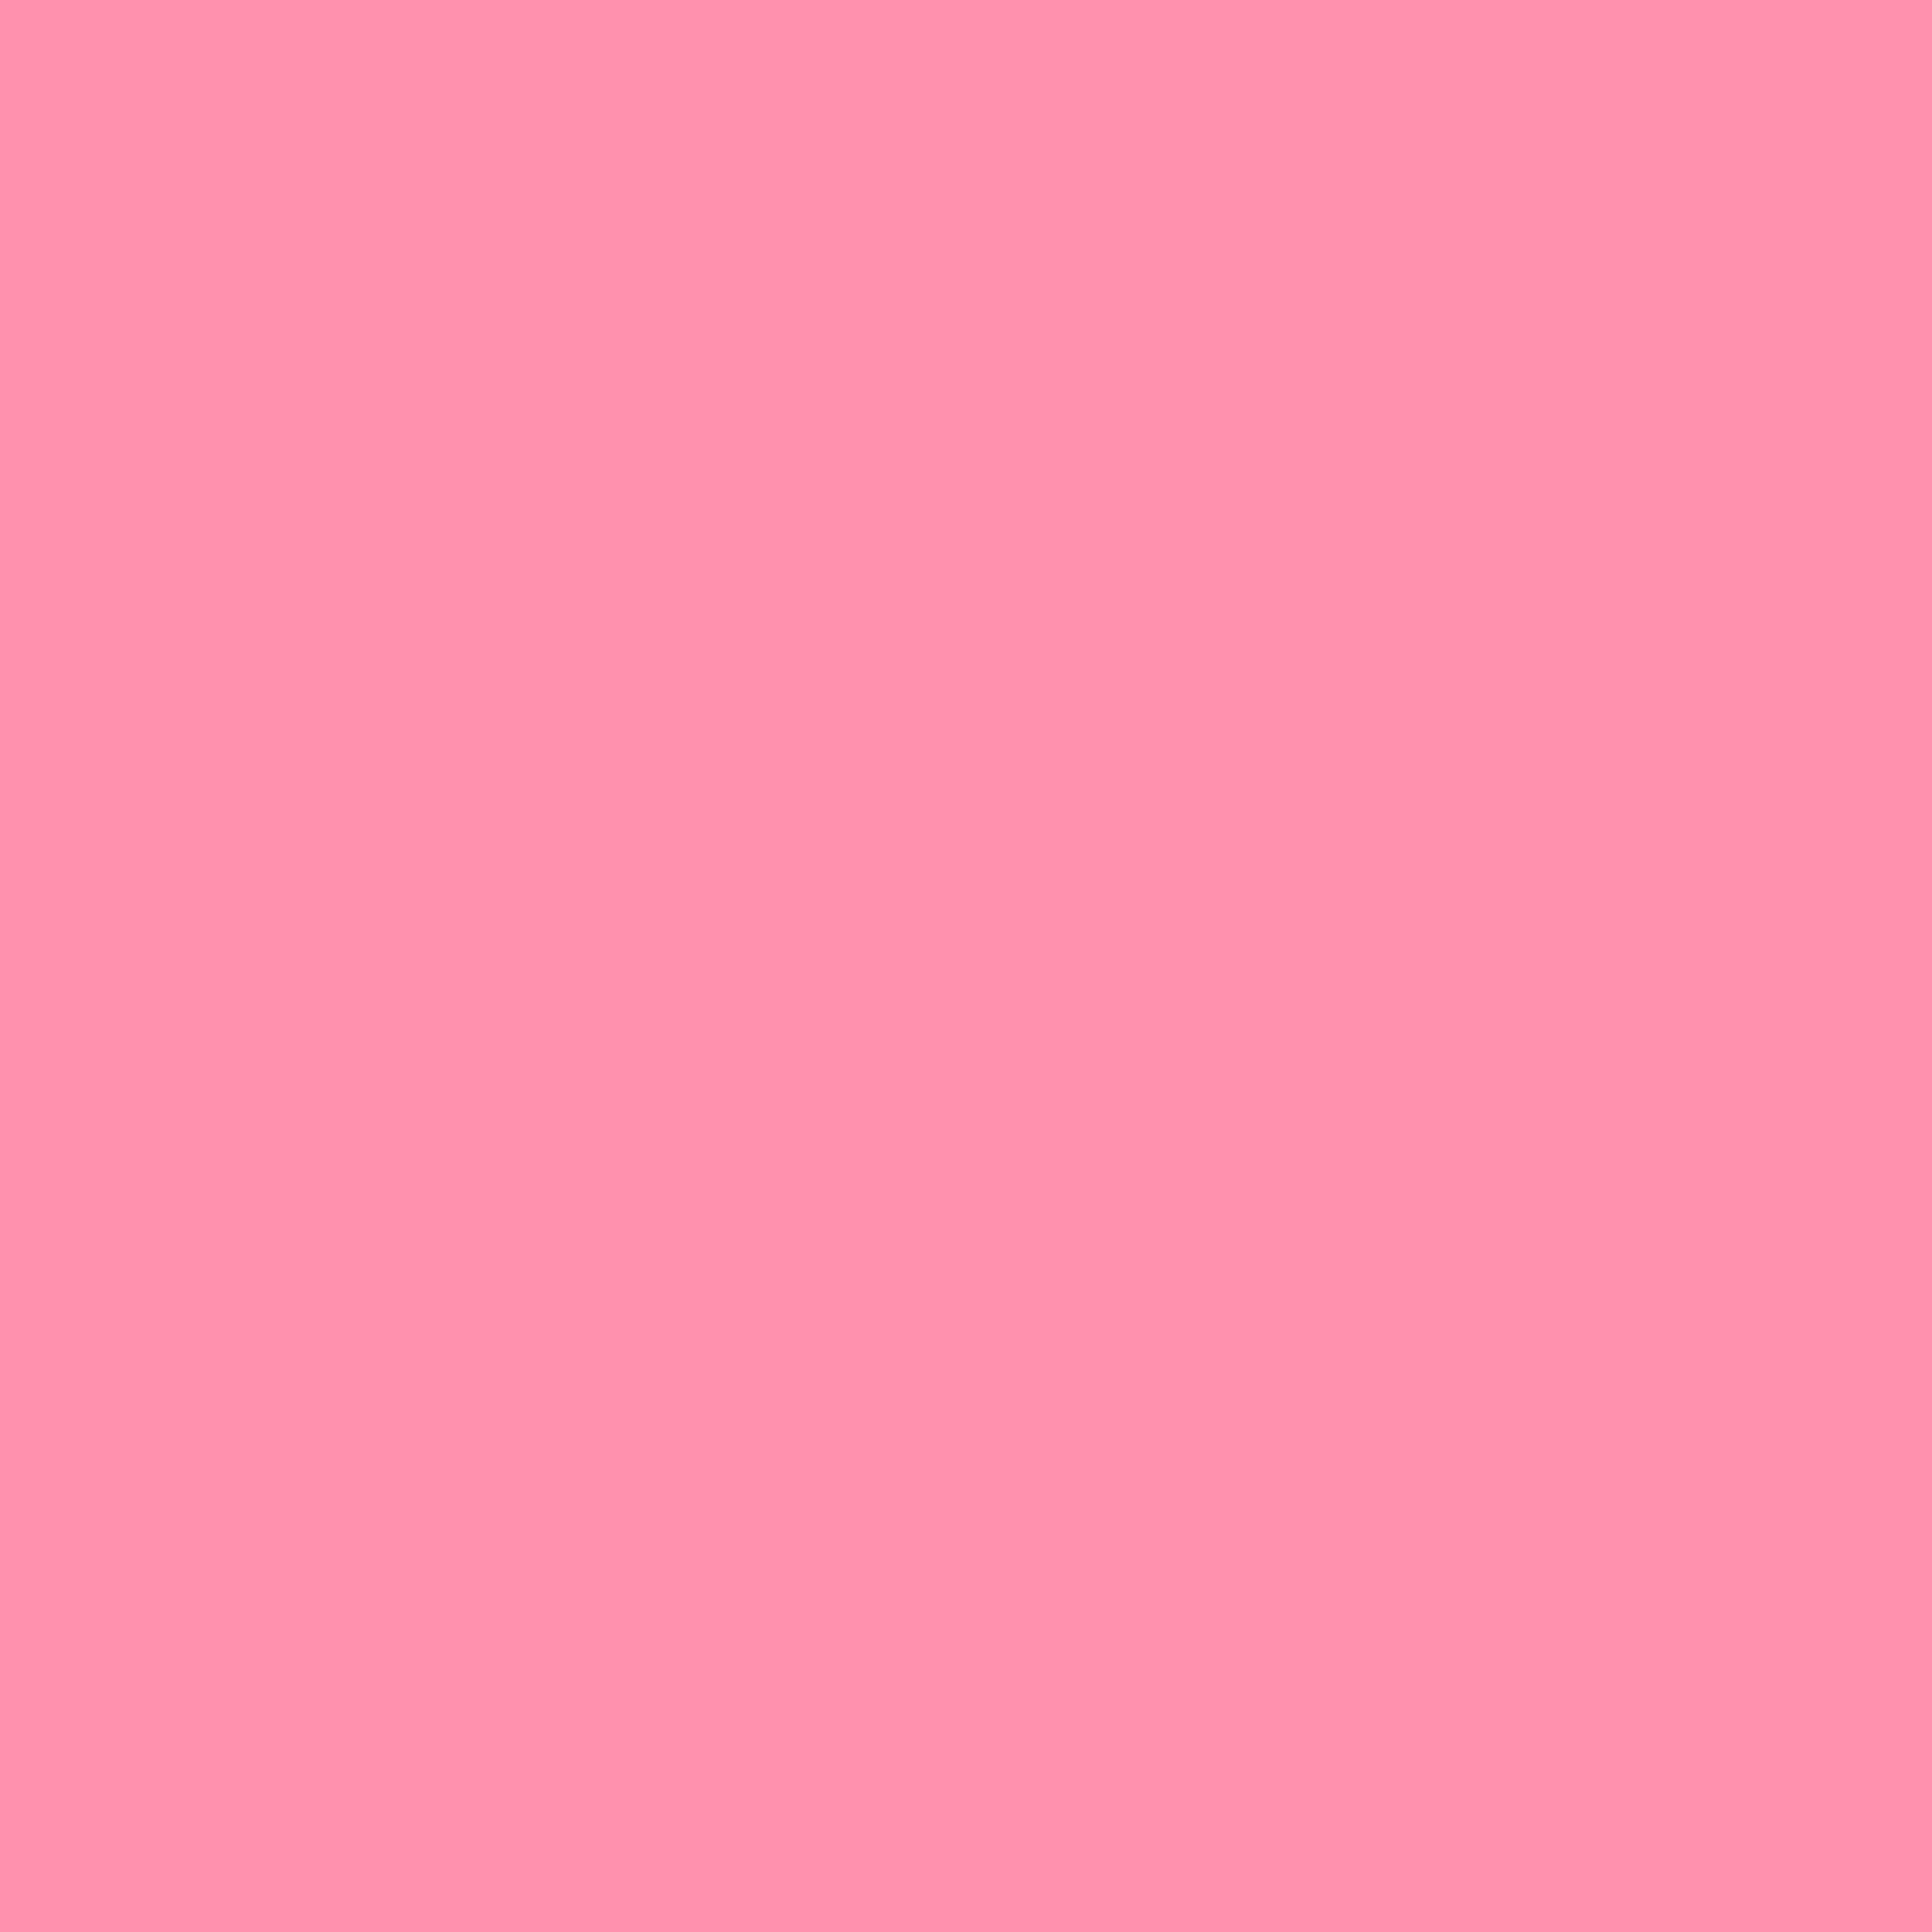 2732x2732 Baker-Miller Pink Solid Color Background